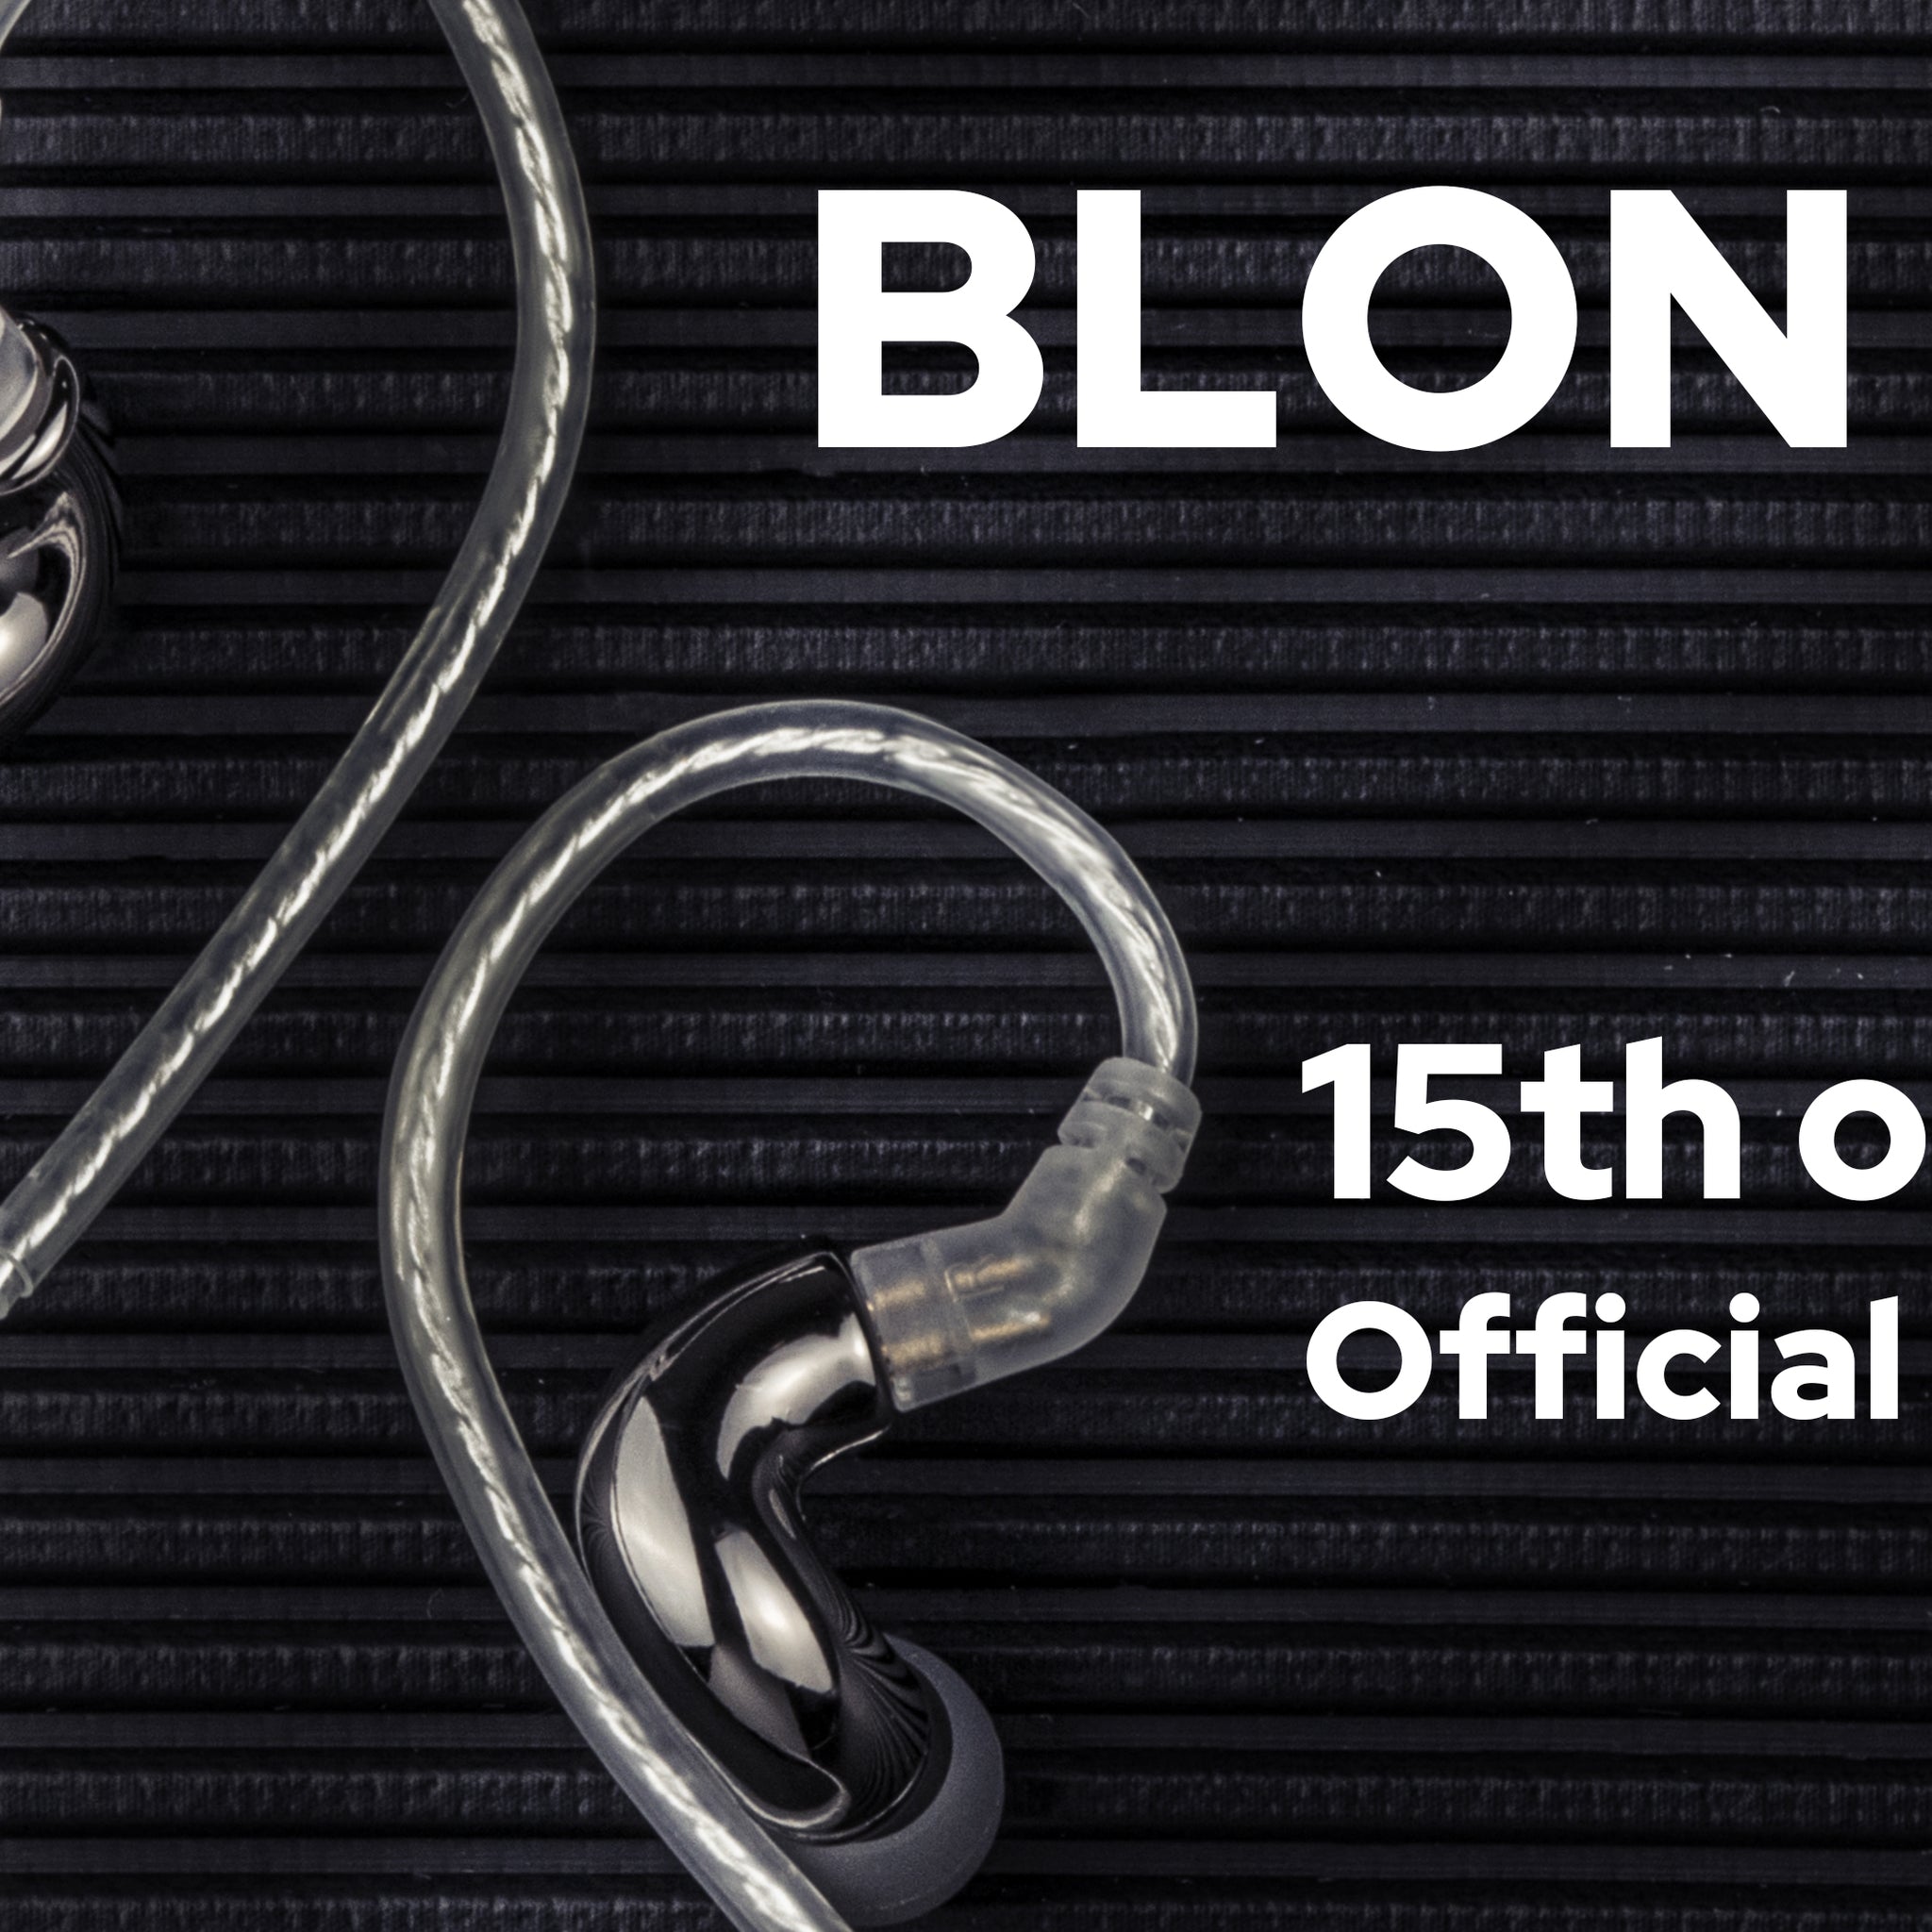 BLON Mini IEM Official Release on 15th April 2021